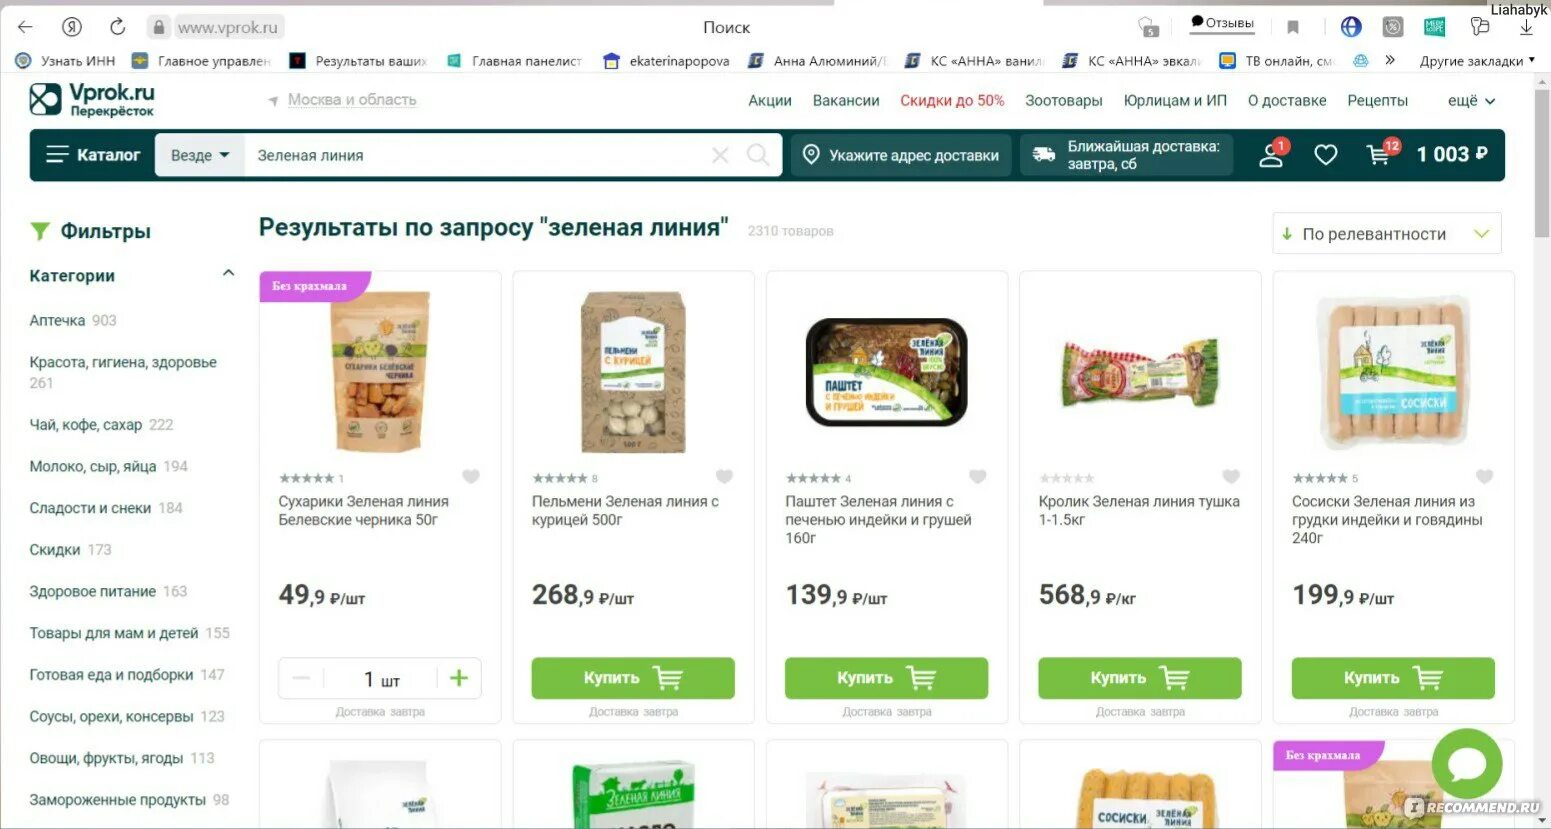 Сайт доставки продуктов москва